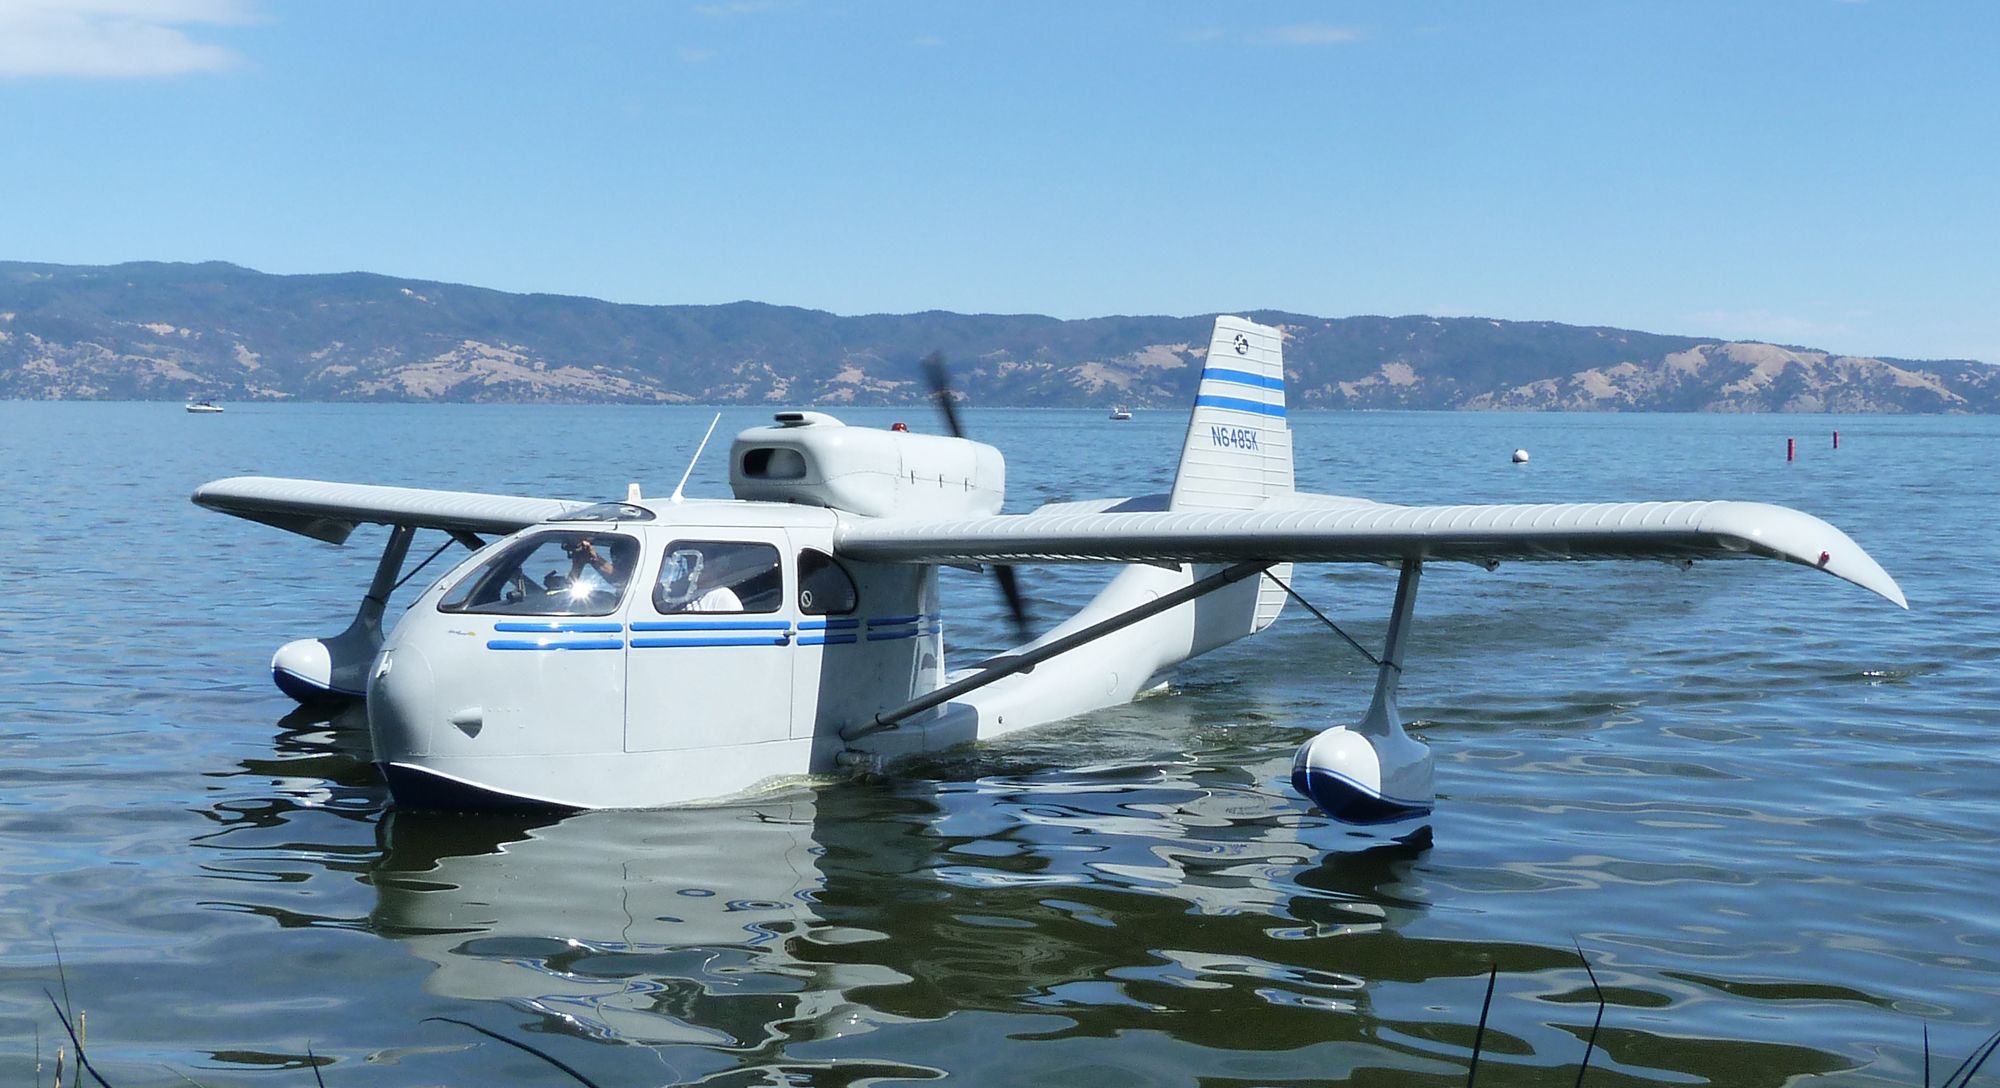 Republic seabee float plane in lake